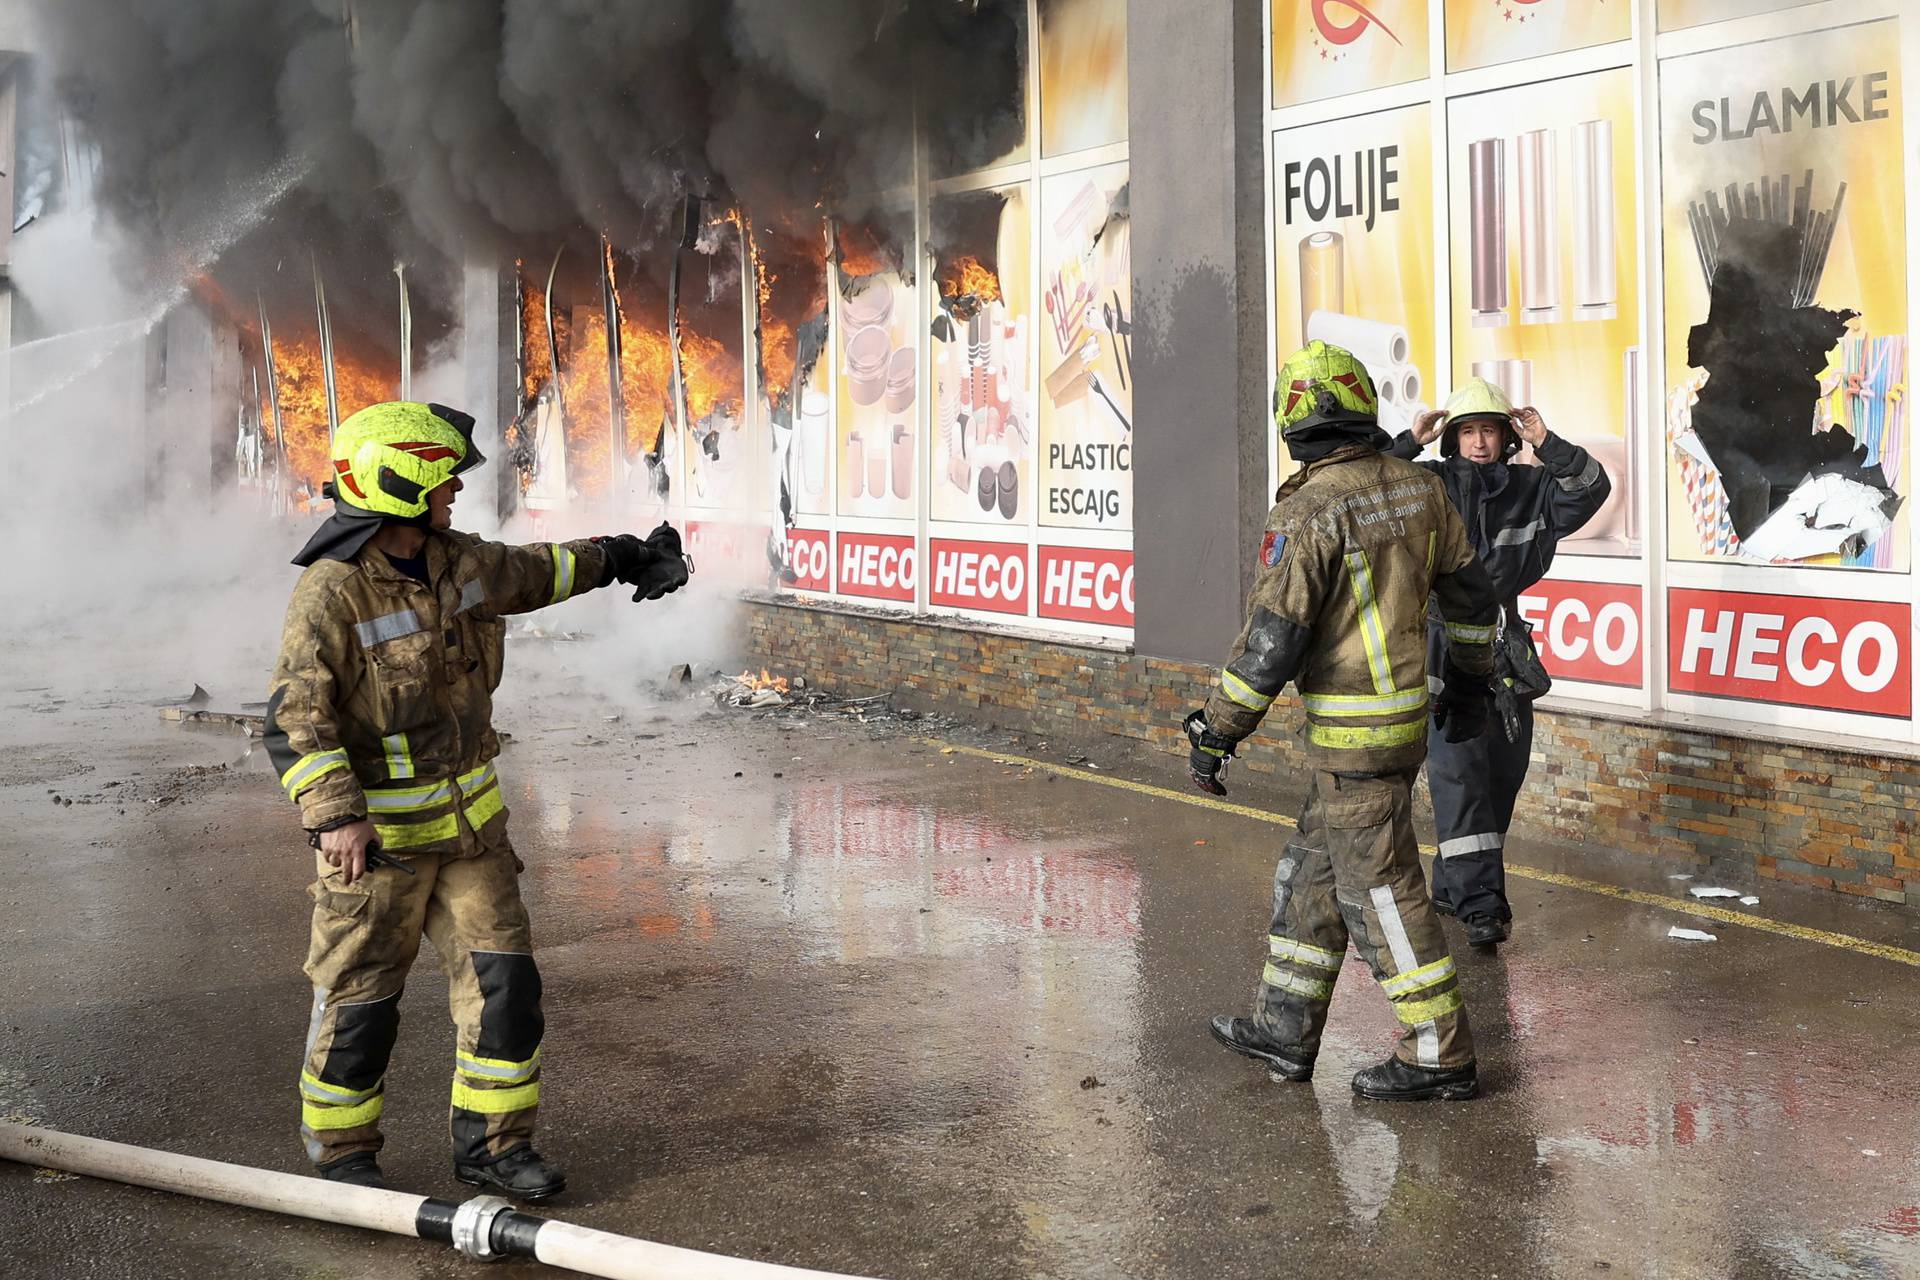 Sarajevo: Vatrogasci se bore s velikim požarom koji je buknuo na tržnici Heco